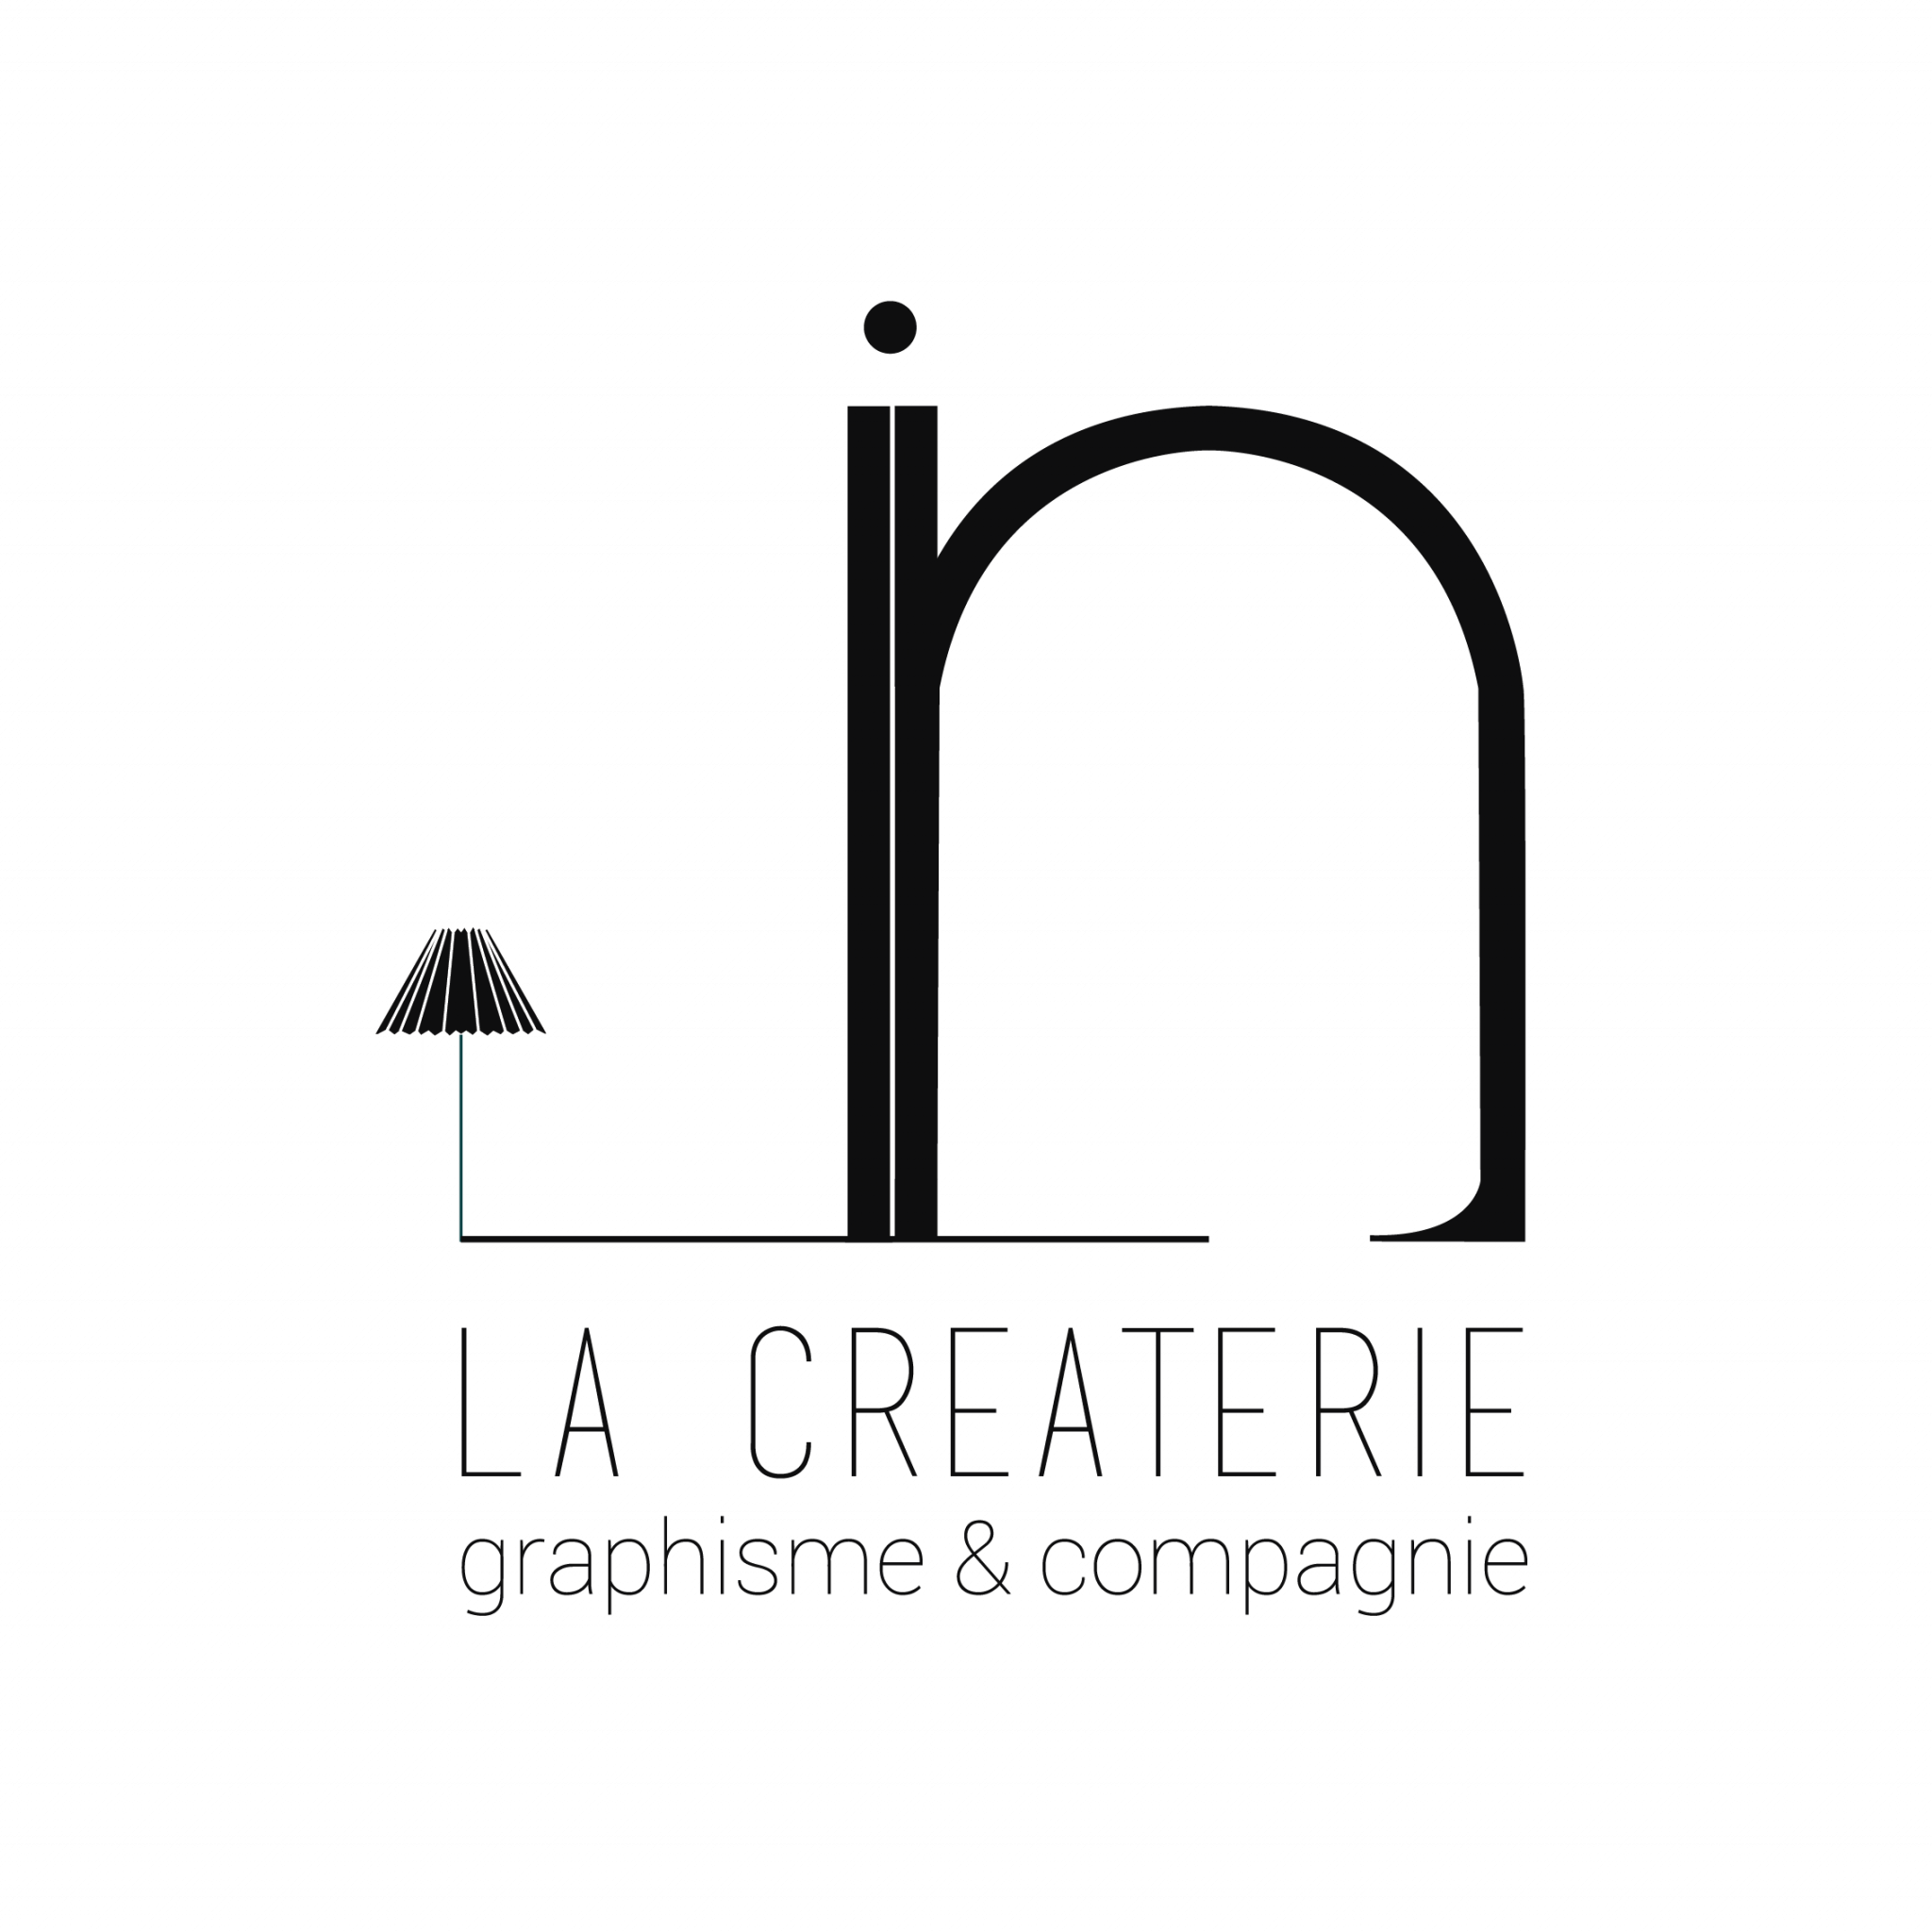 Julie, La Créaterie.'s logo